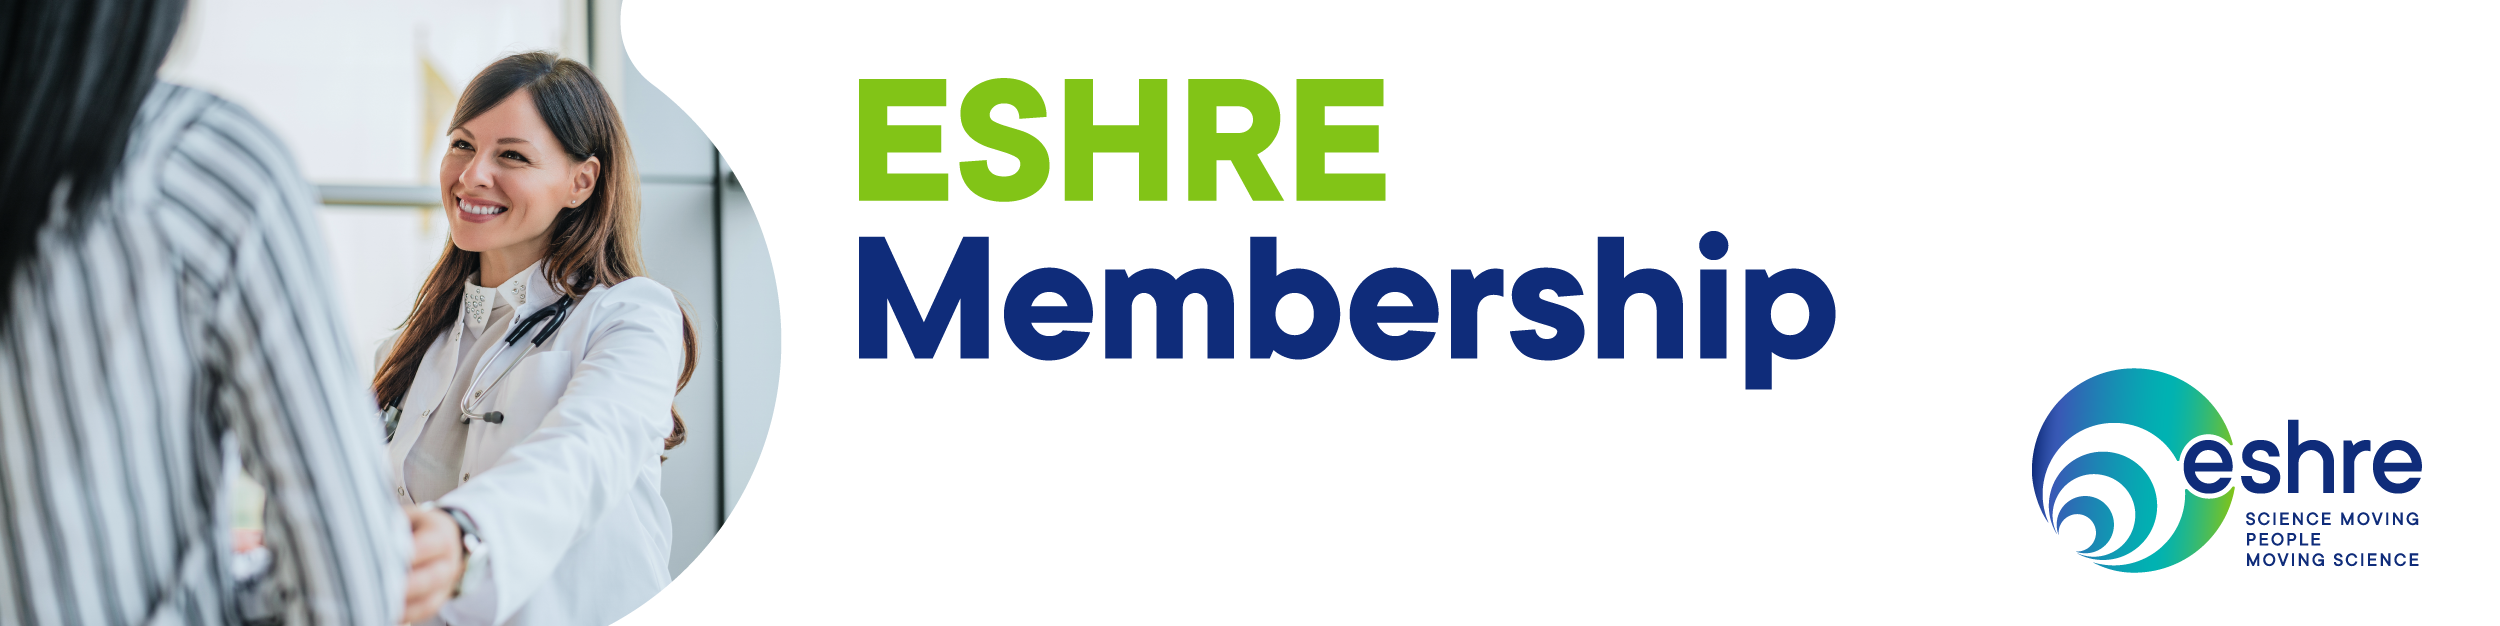 ESHRE Membership